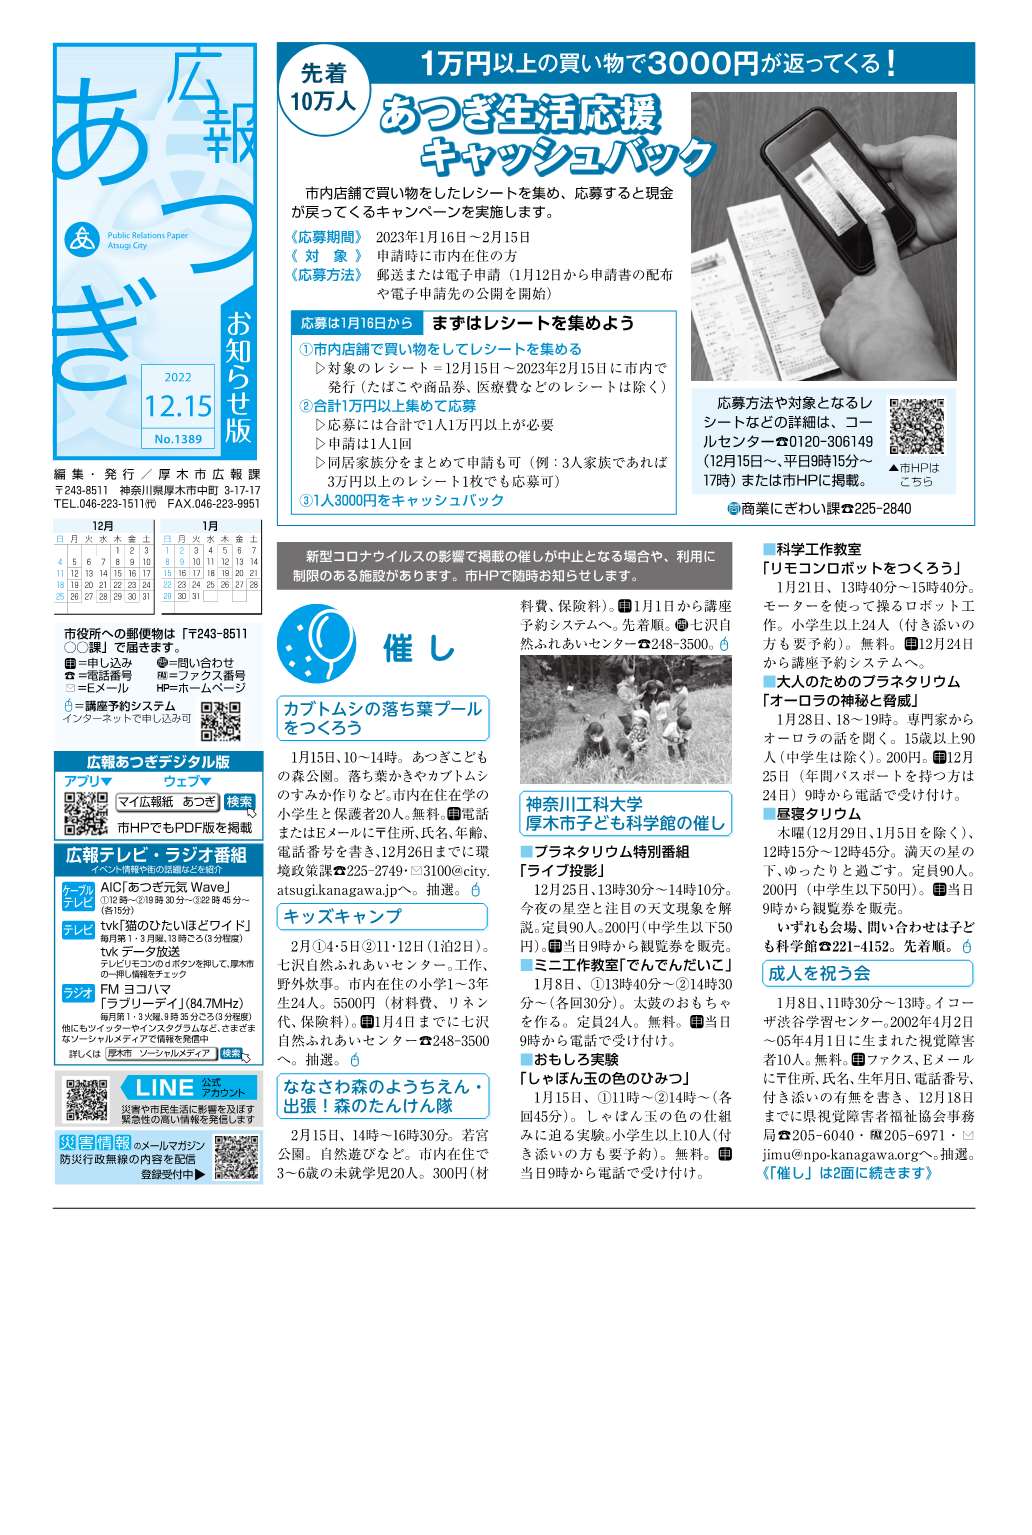 広報あつぎ12月15日号の1面のイメージ画像